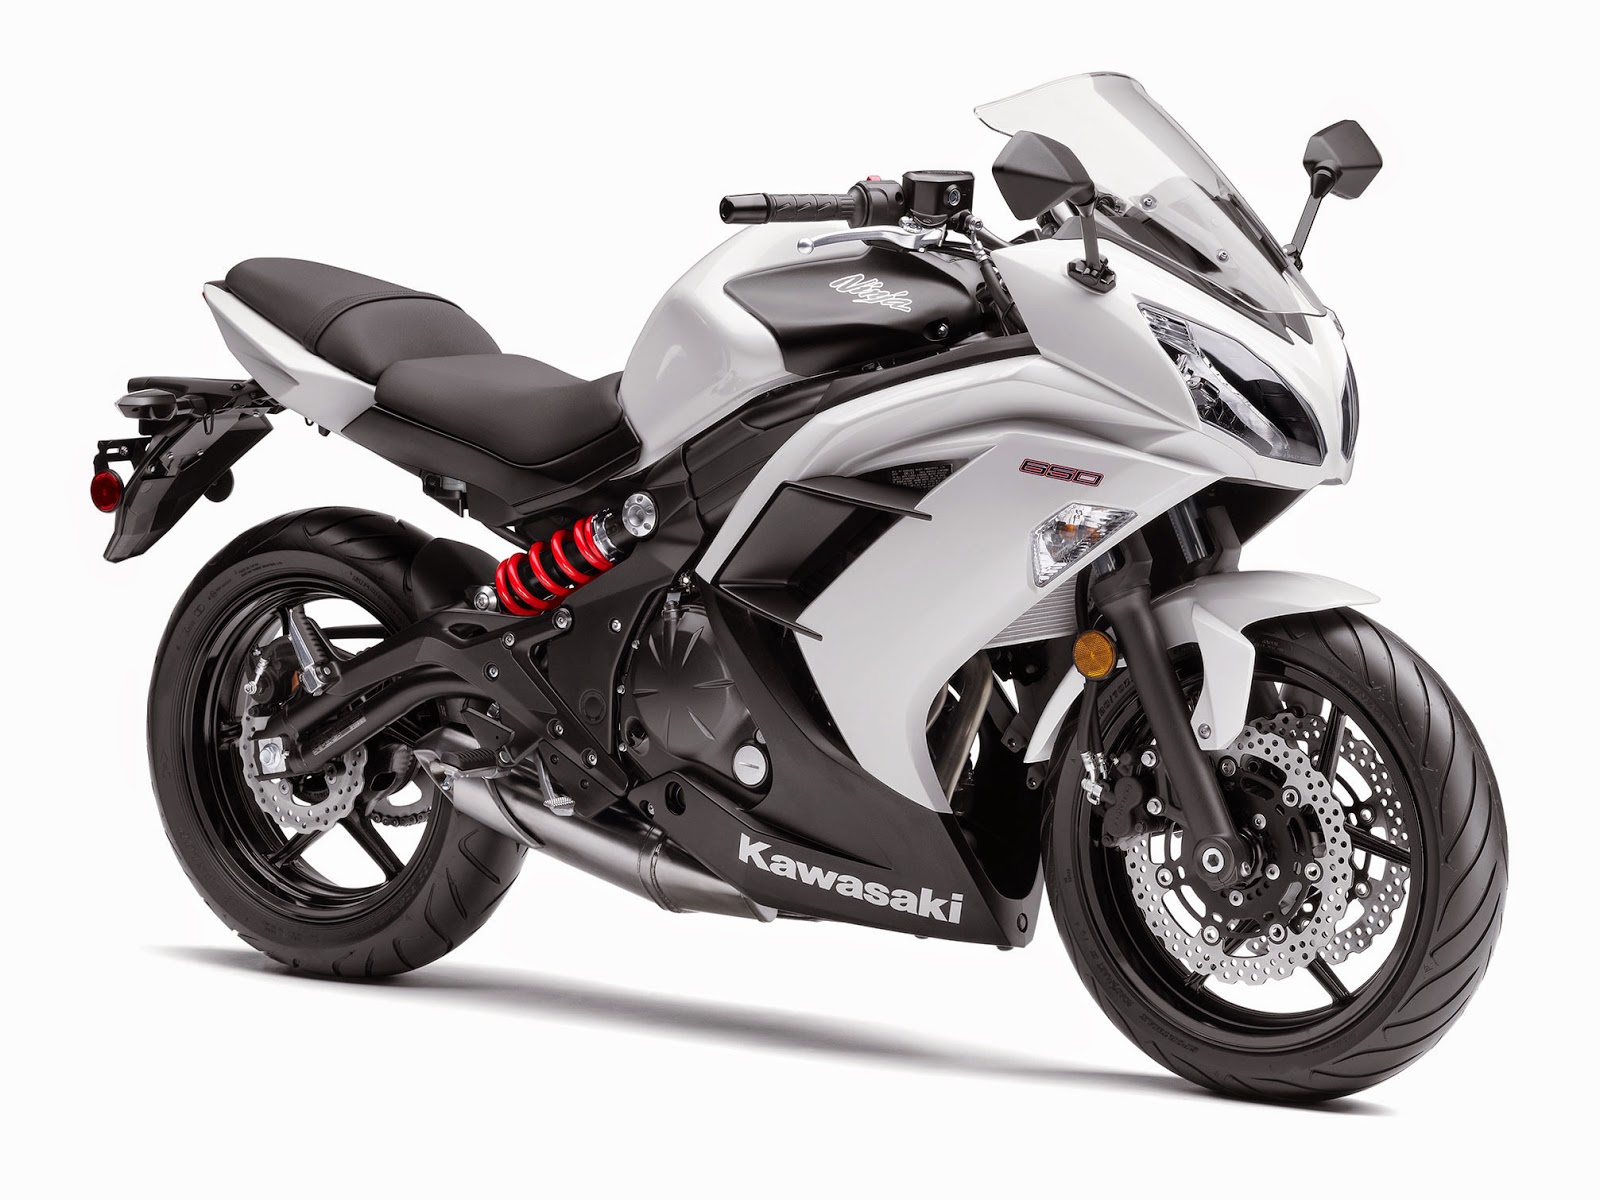 Pegajoso Tengo una clase de ingles Exclusión Todo sobre motos: Kawasaki Ninja 650